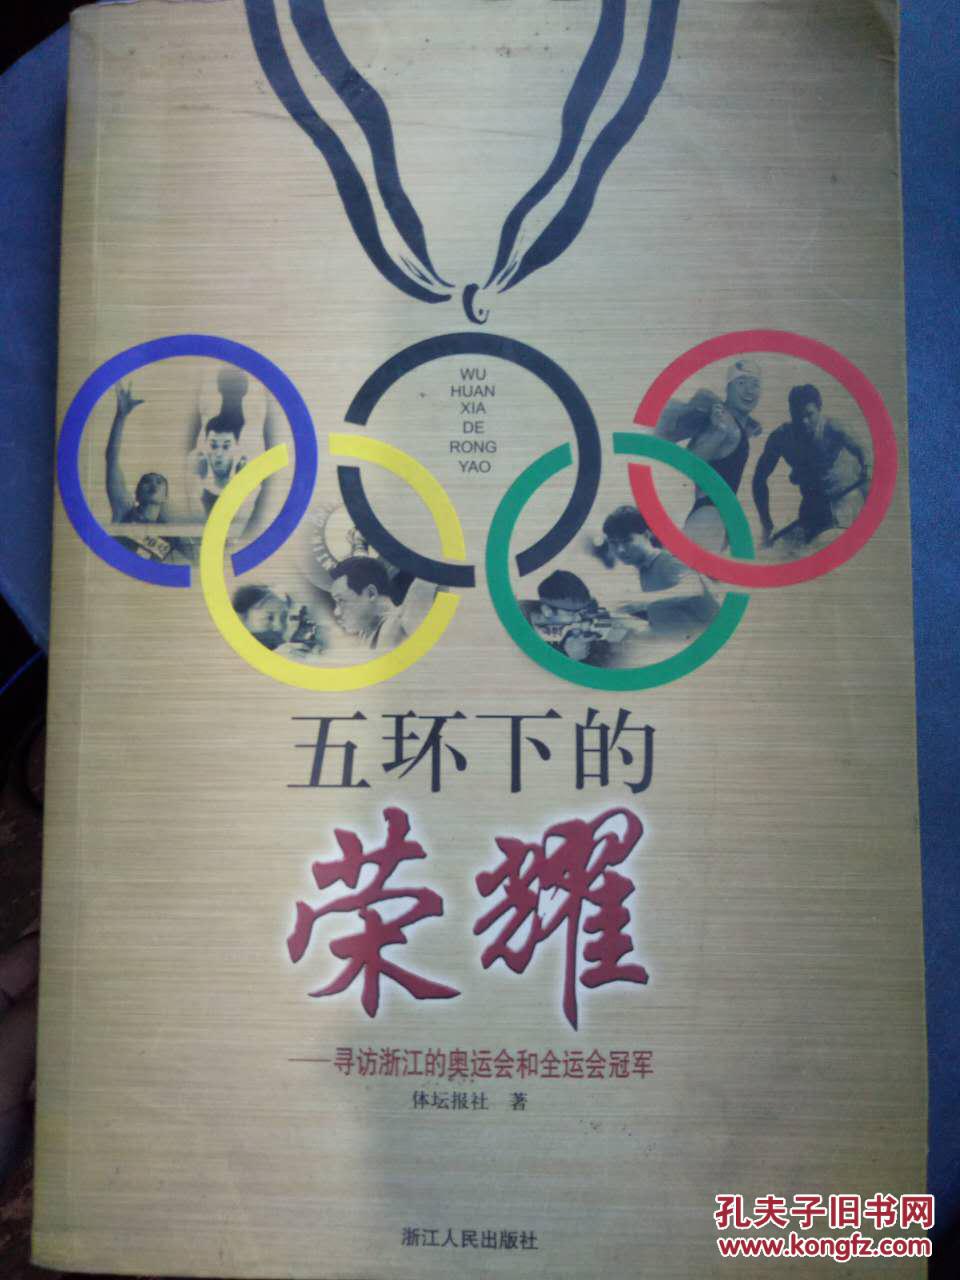 五环下的荣耀——寻访浙江的奥运会和全运会冠军